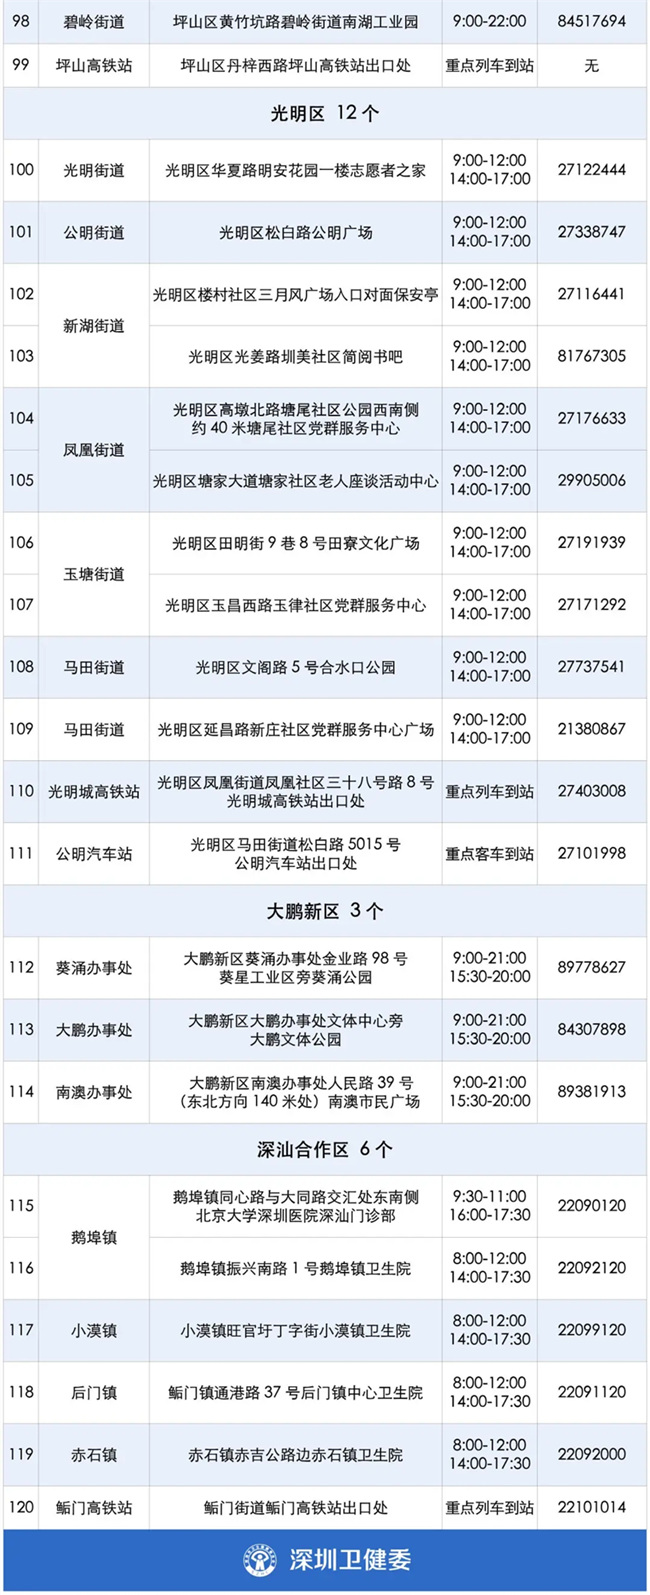 2021年8月10日深圳市免费核酸检测点增至120个